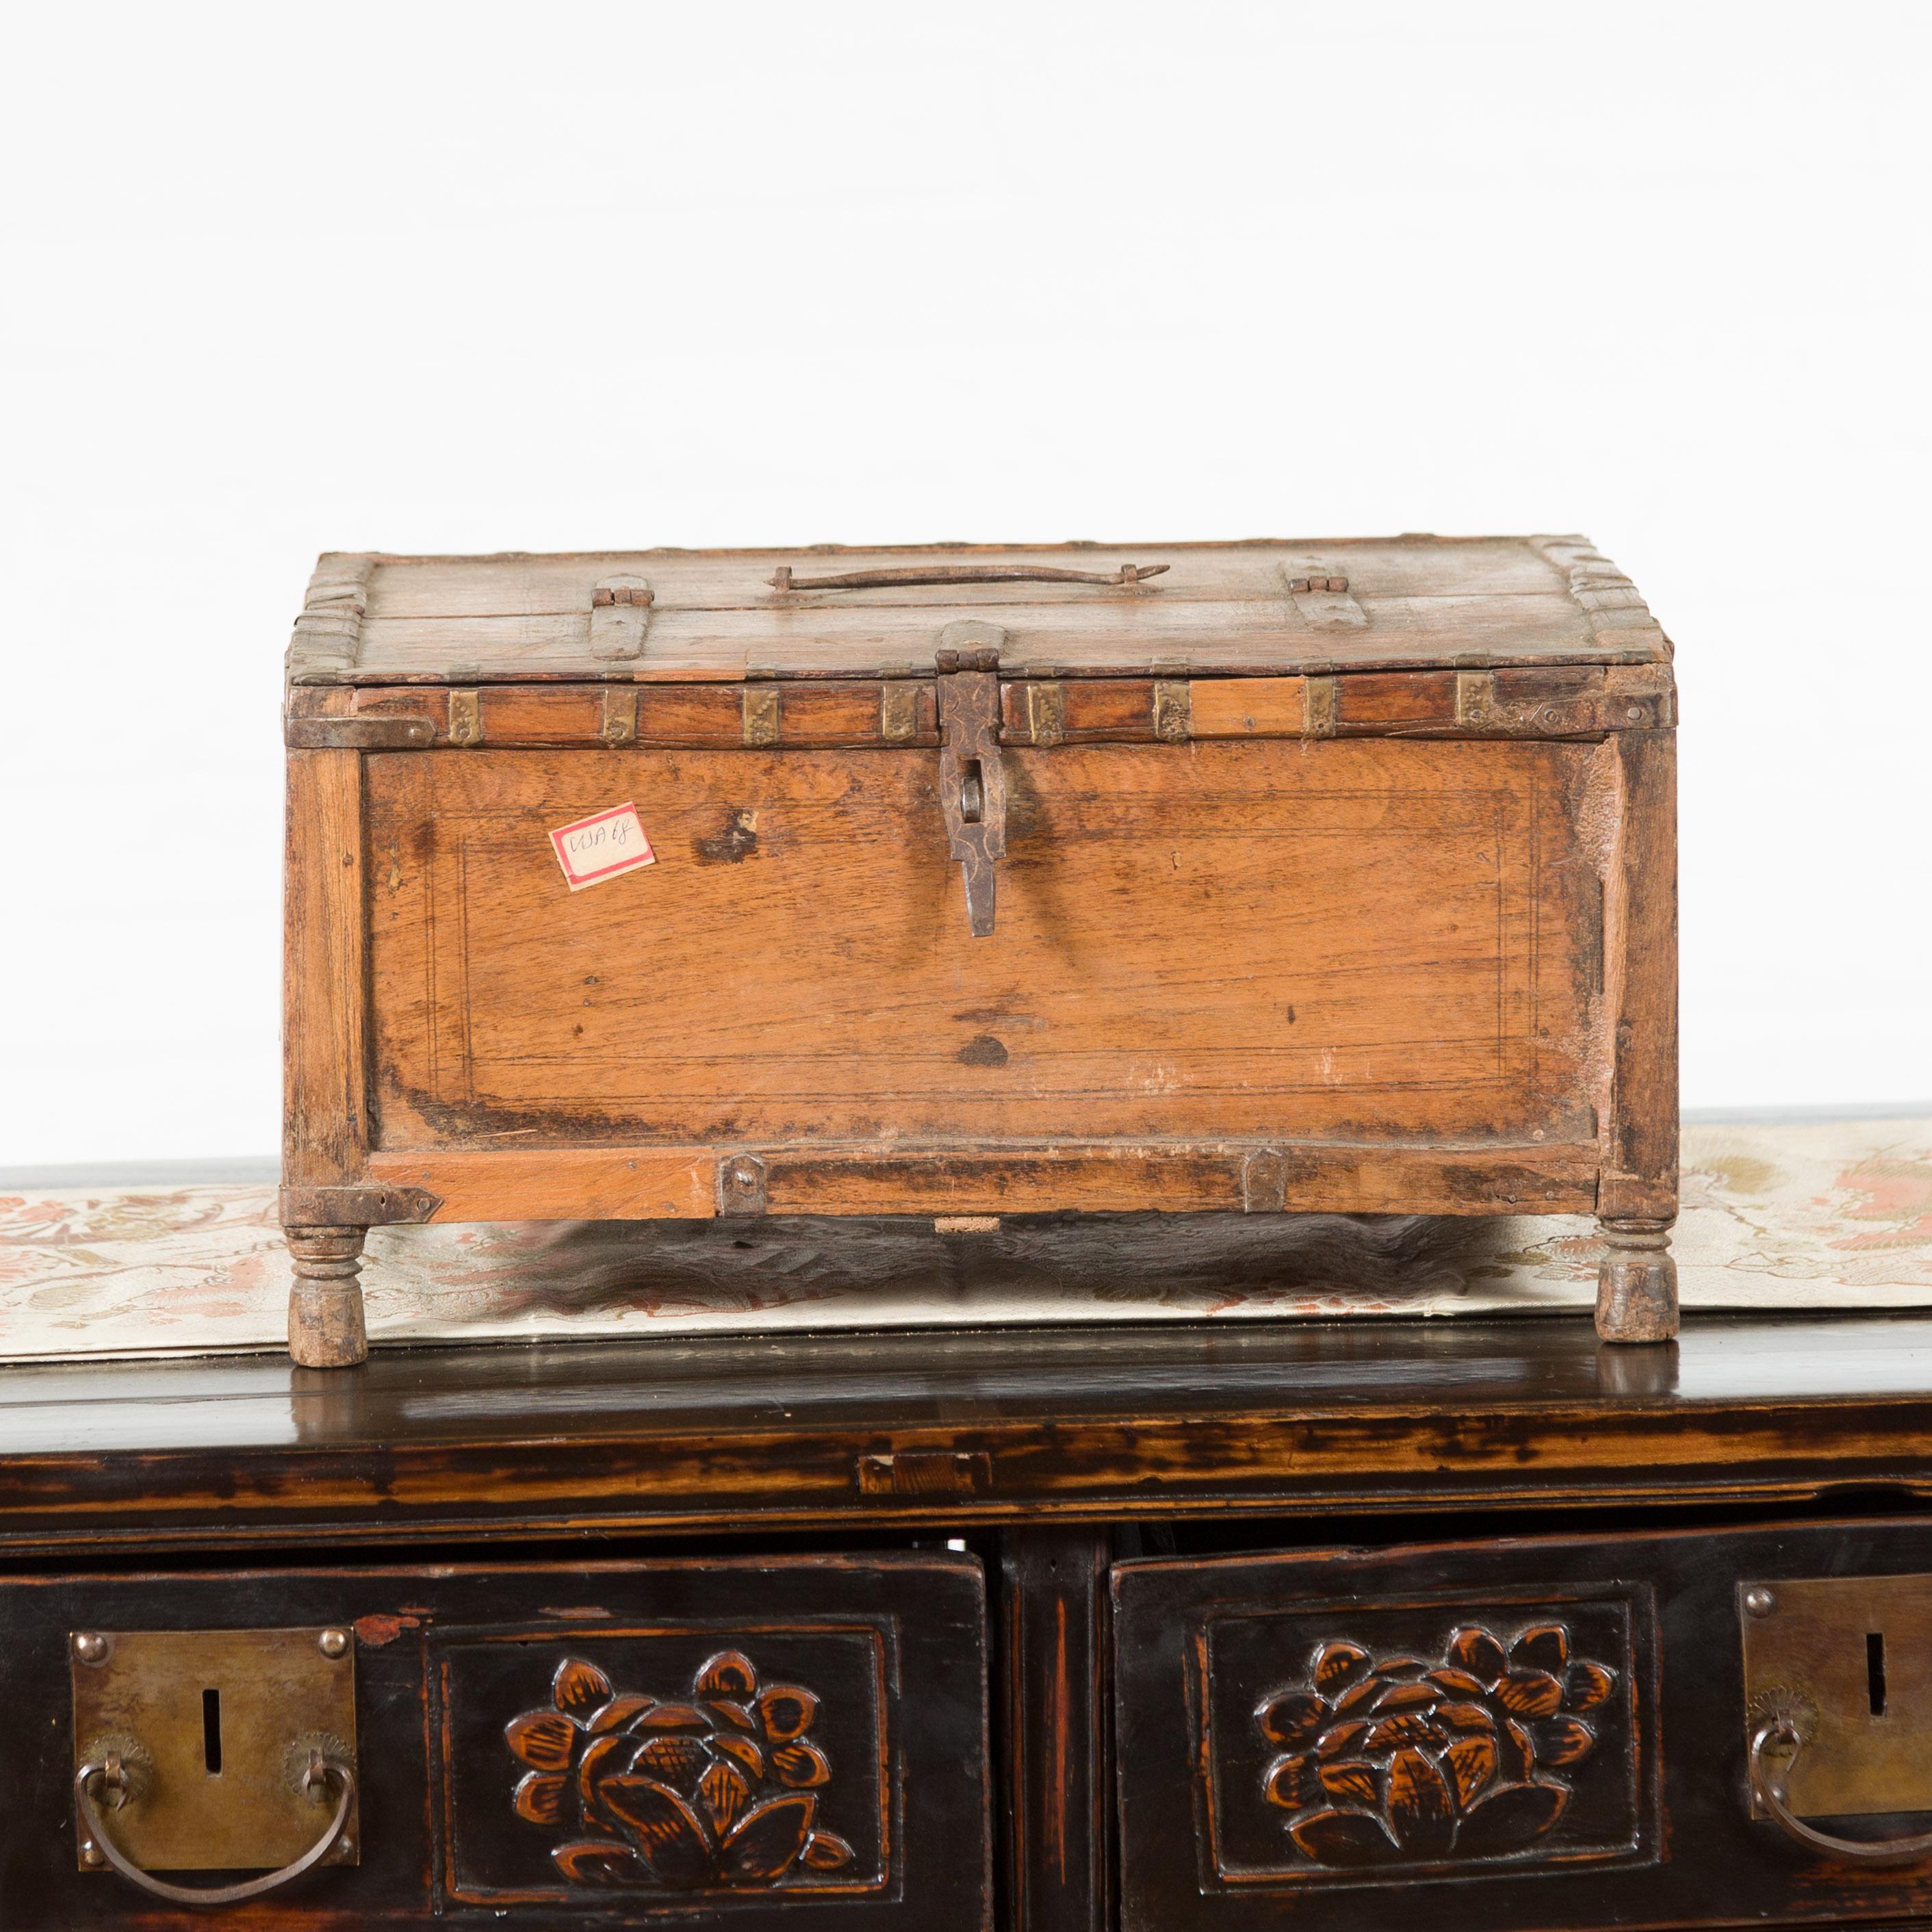 Une boîte indienne rustique en bois du 19ème siècle, avec un aspect joliment patiné, des détails en fer et des motifs incisés. Créée en Inde au XIXe siècle, cette boîte en bois présente un couvercle rectangulaire orné de cercles concentriques, qui